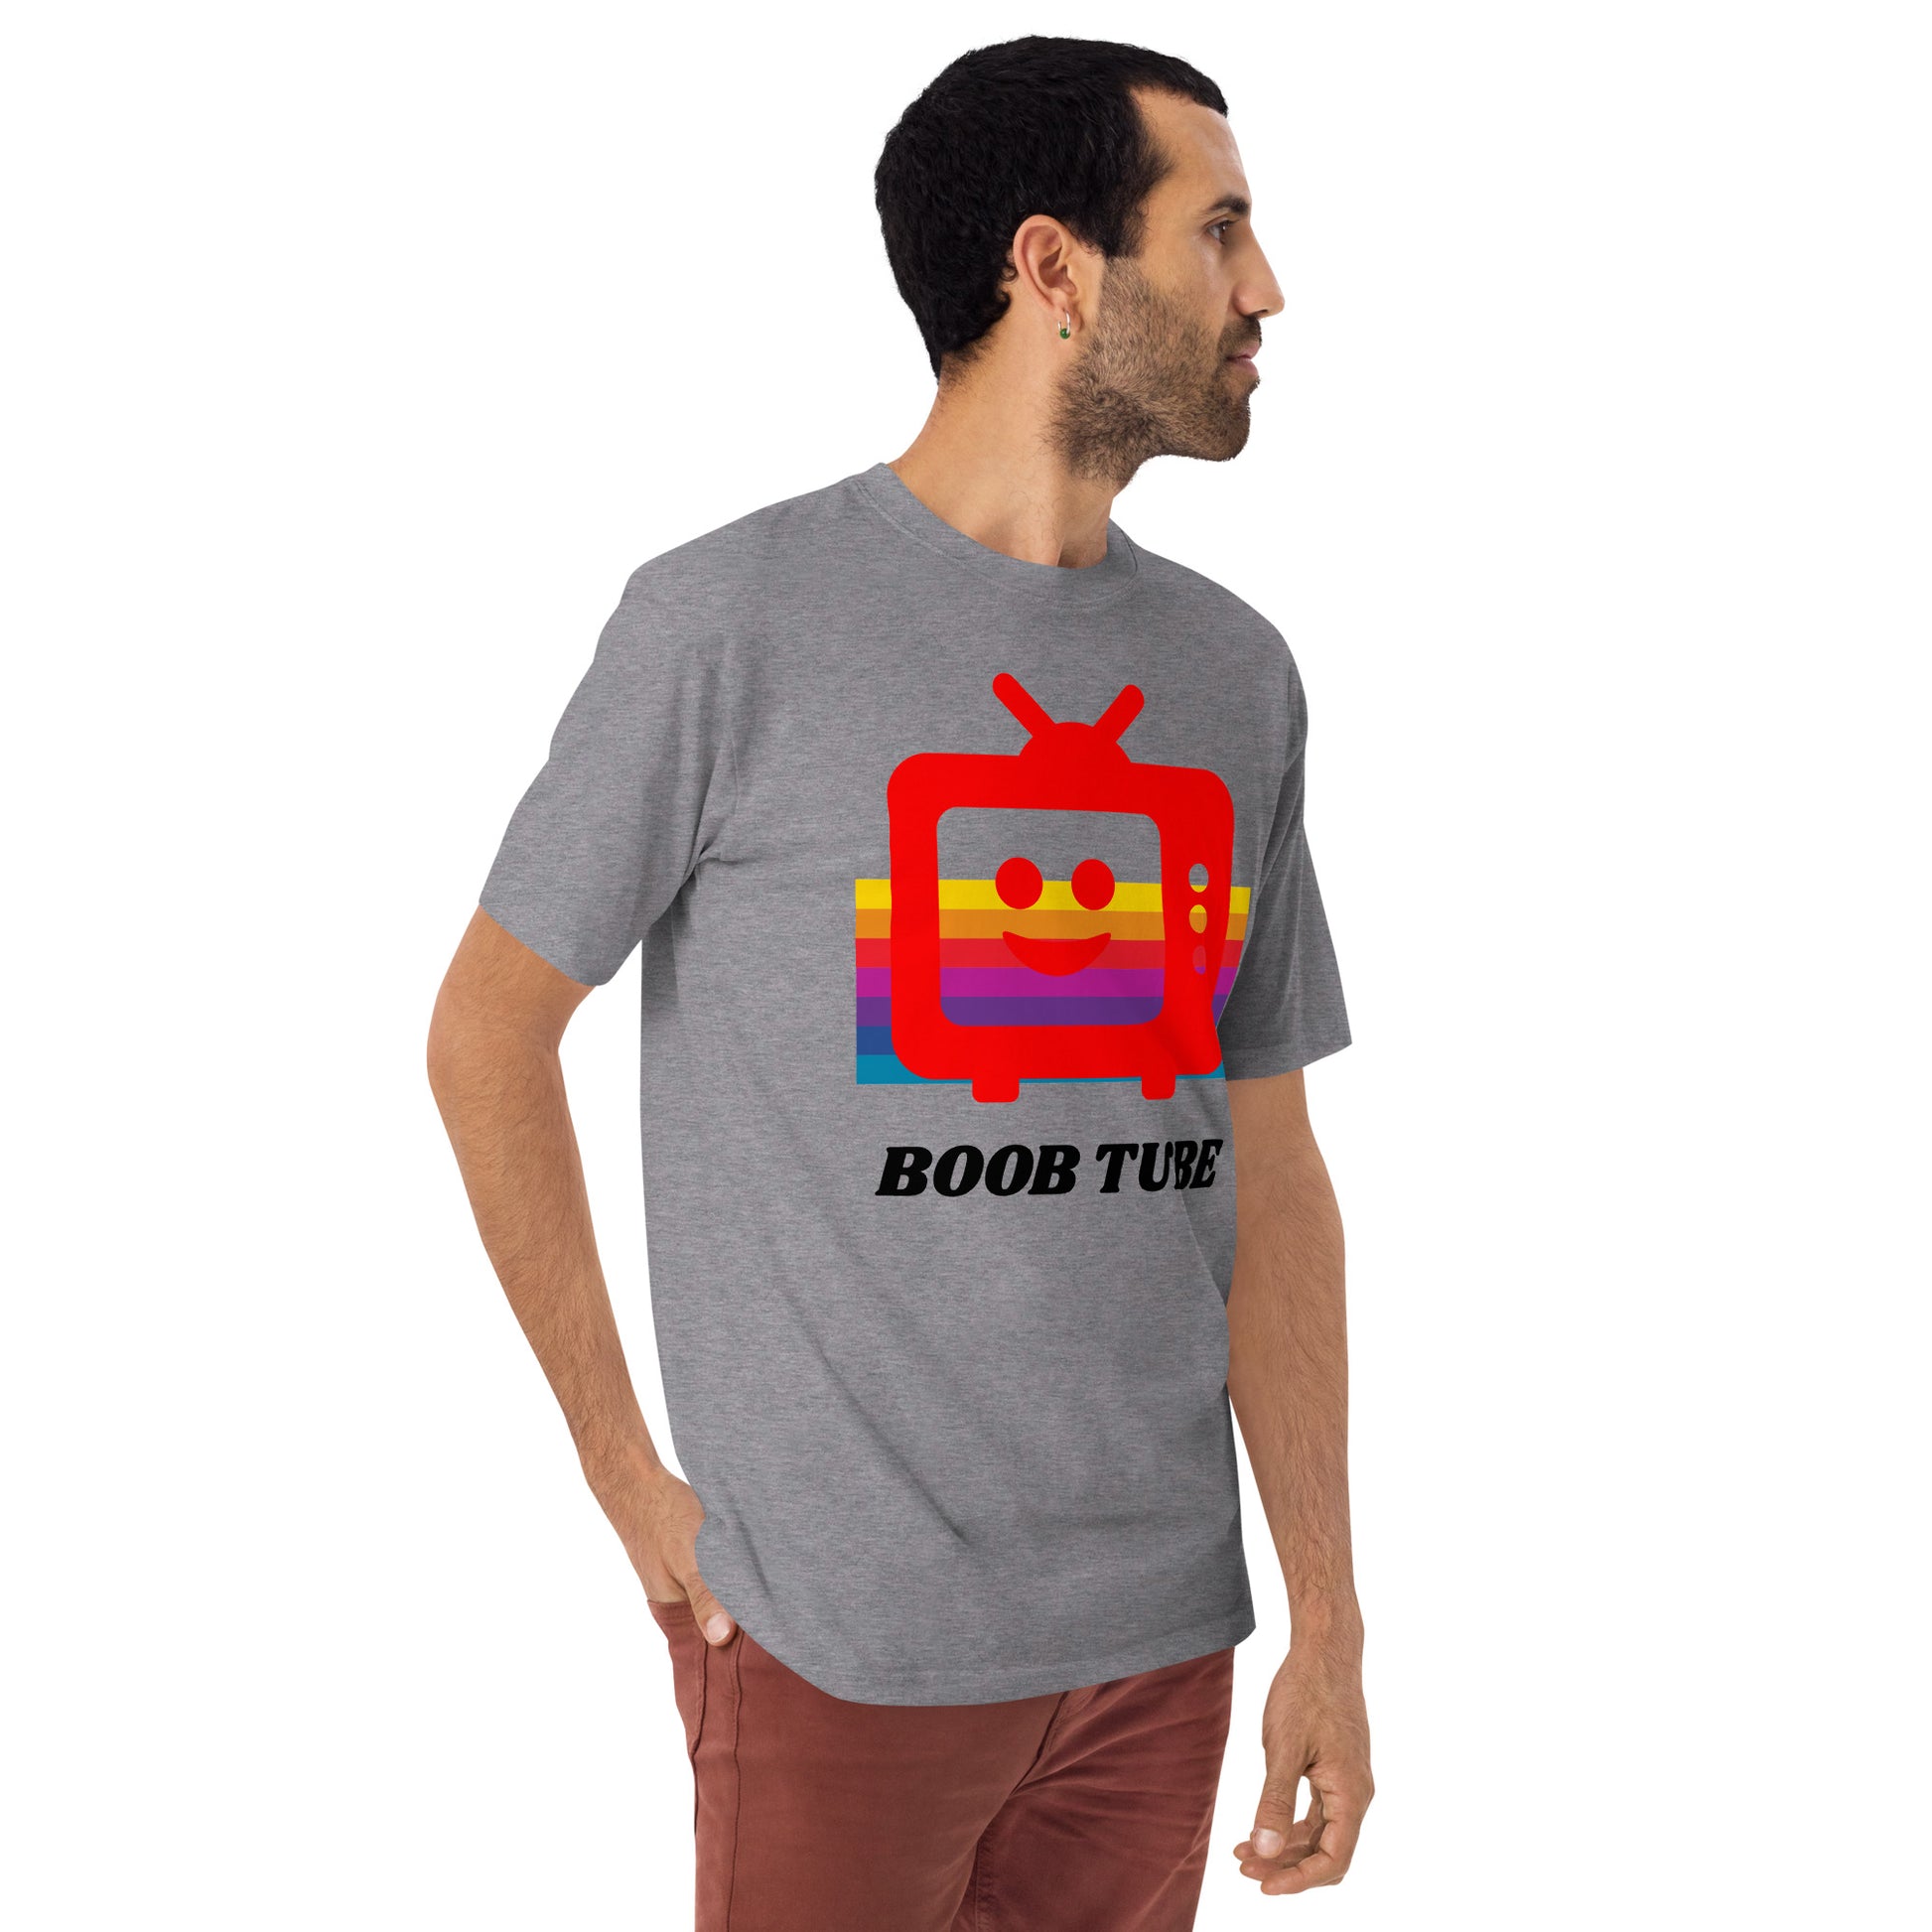 Boob Tube T-Shirt Shirts & Tops Whimzy Tees exclusive at Shop